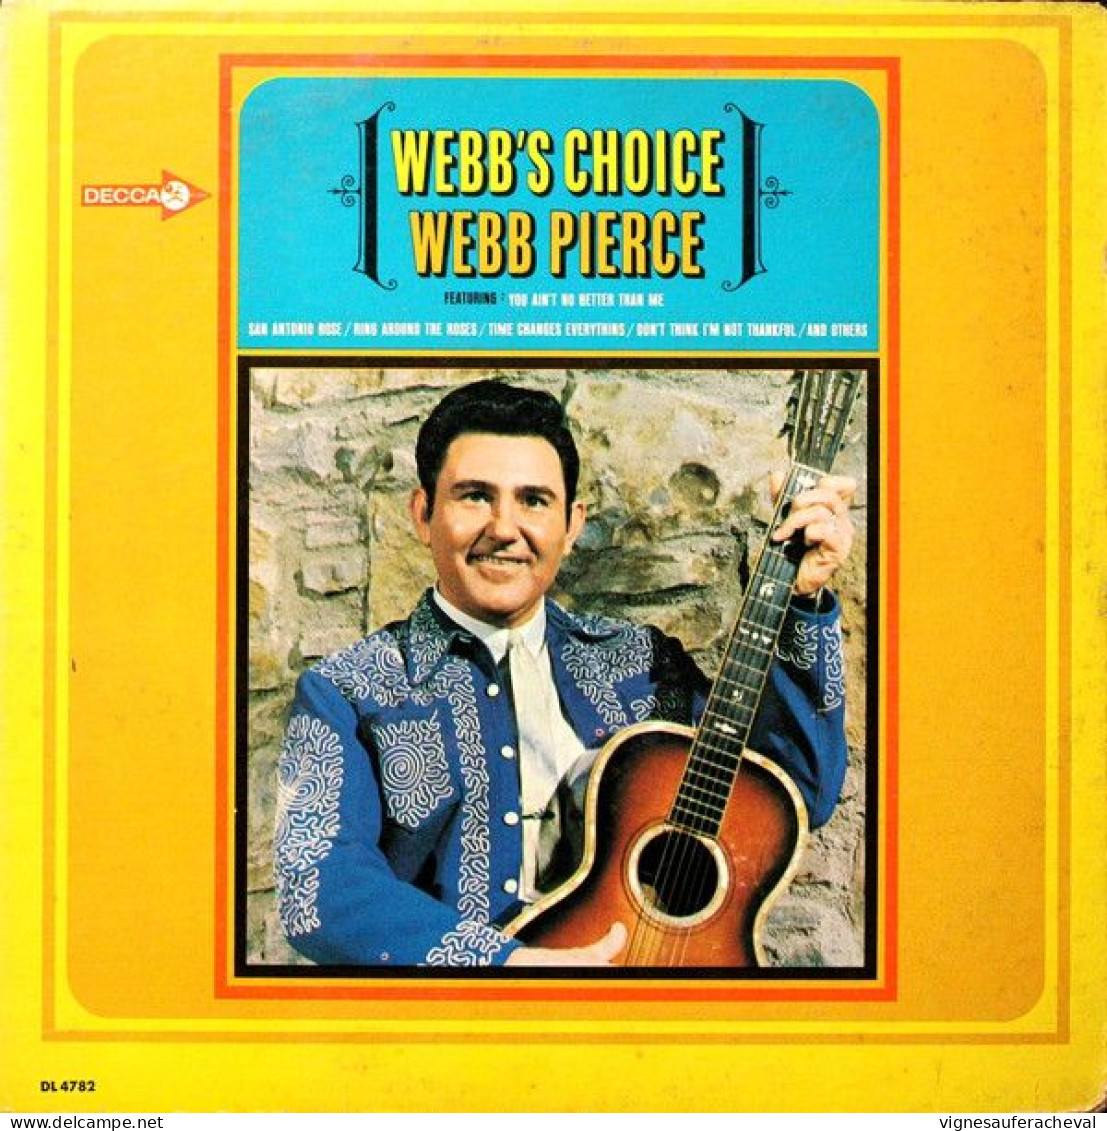 Webb Pierce --Webb S Choice - Sonstige - Englische Musik